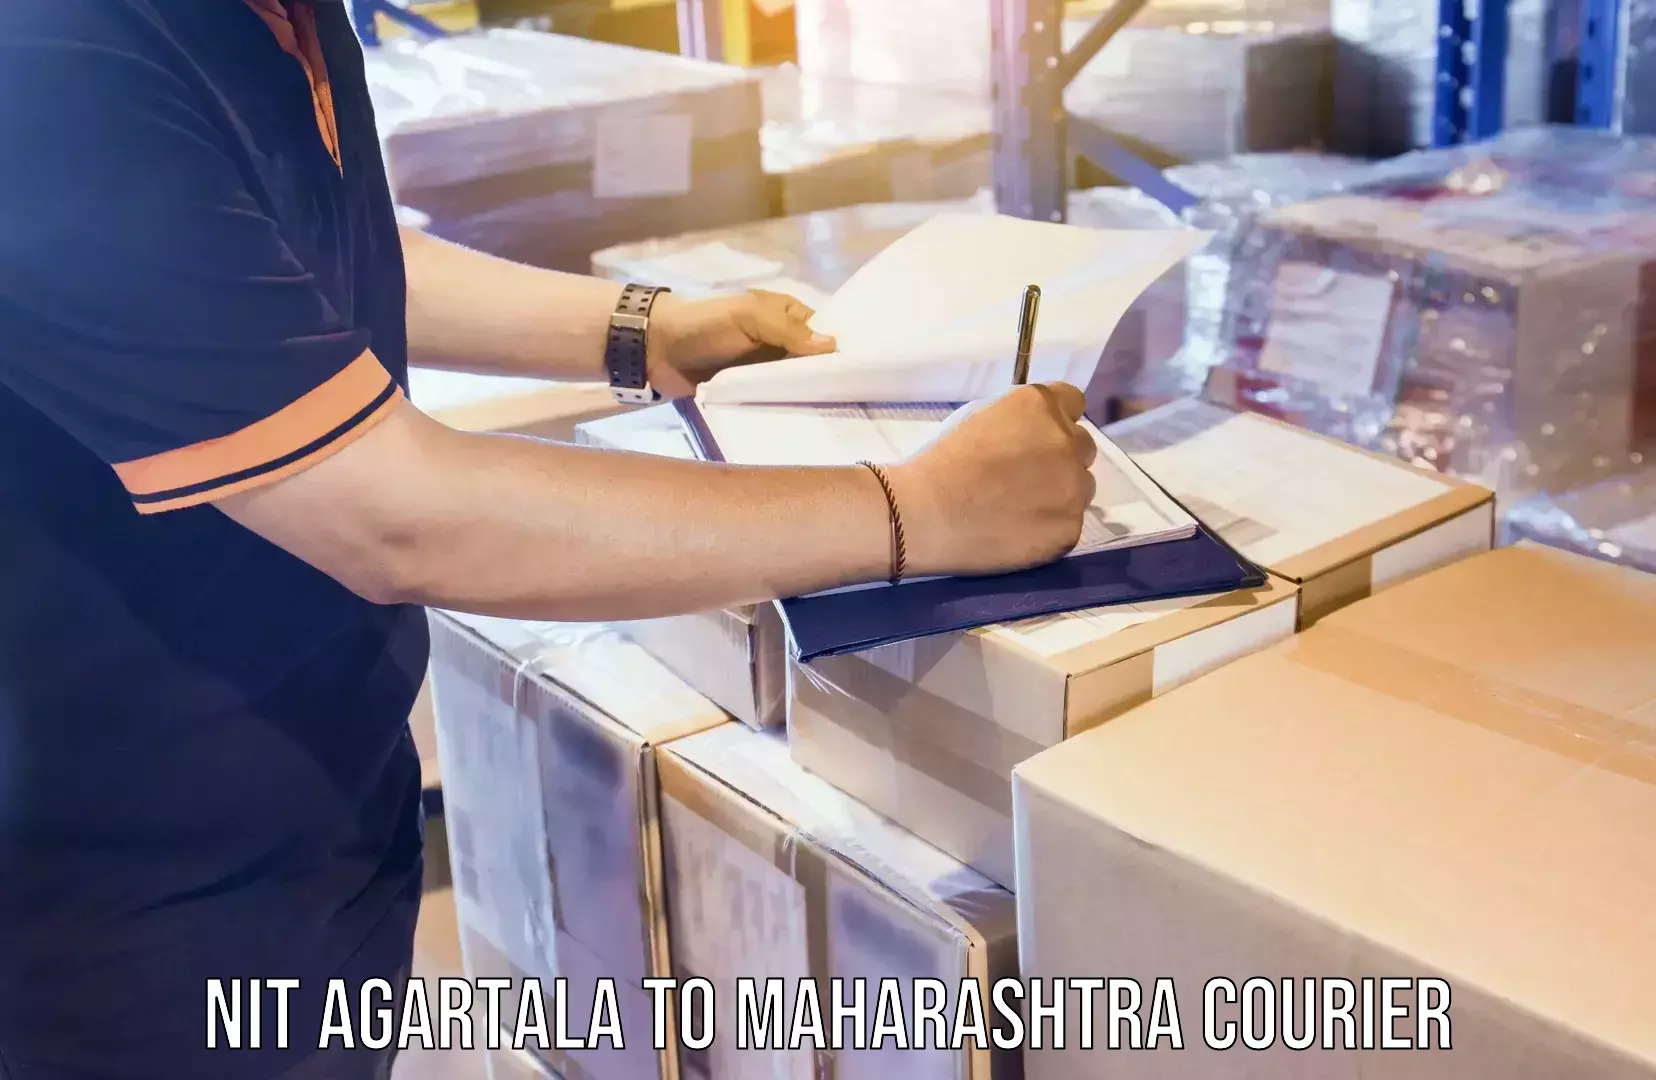 24/7 courier service NIT Agartala to Maharashtra